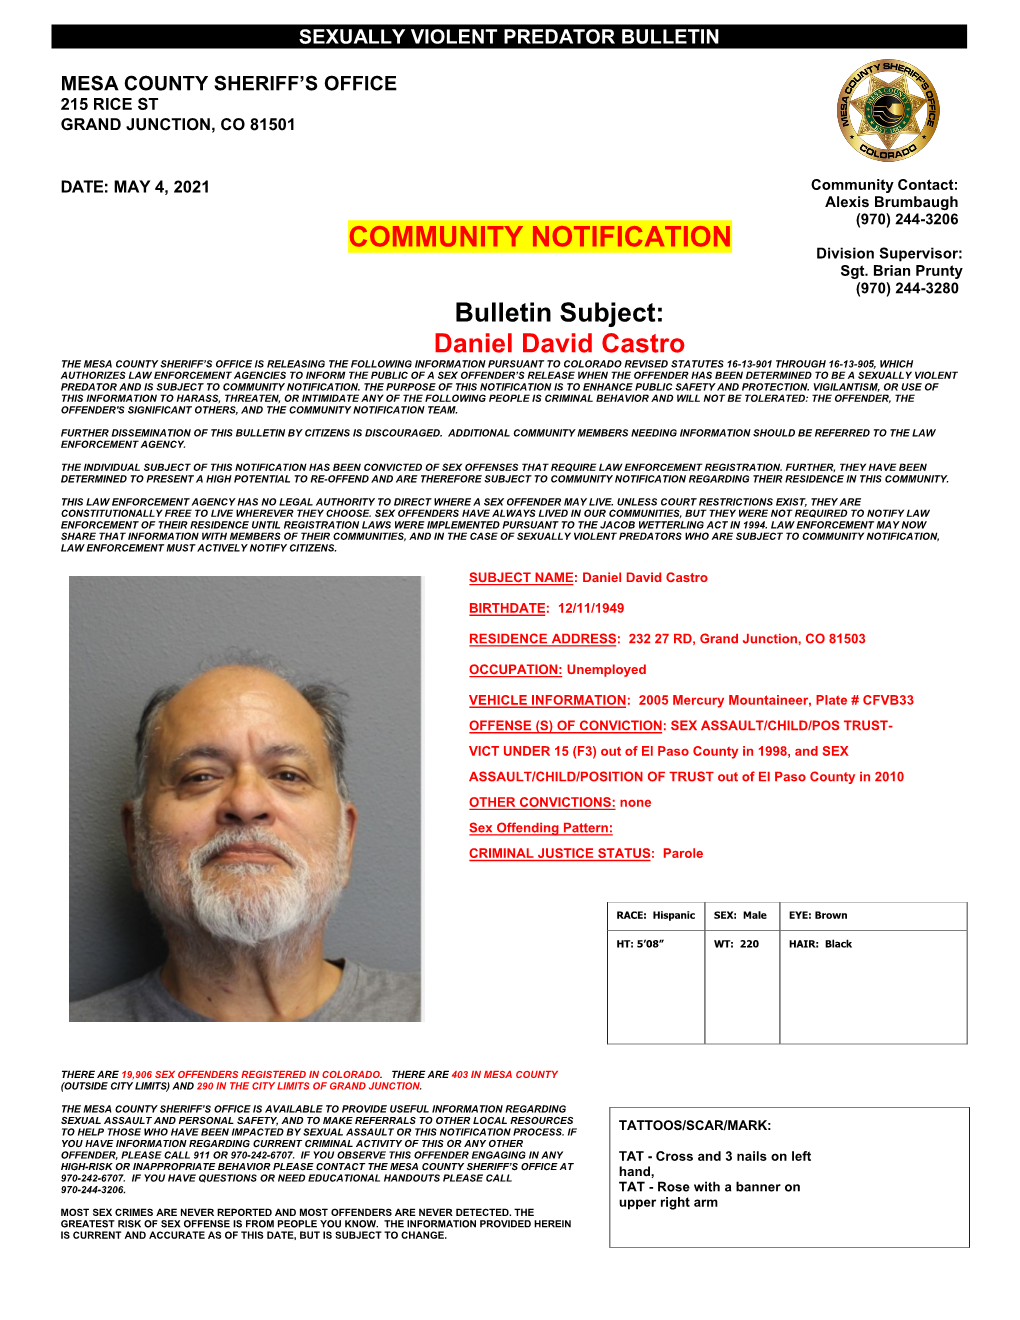 Daniel David Castro Community Bulletin